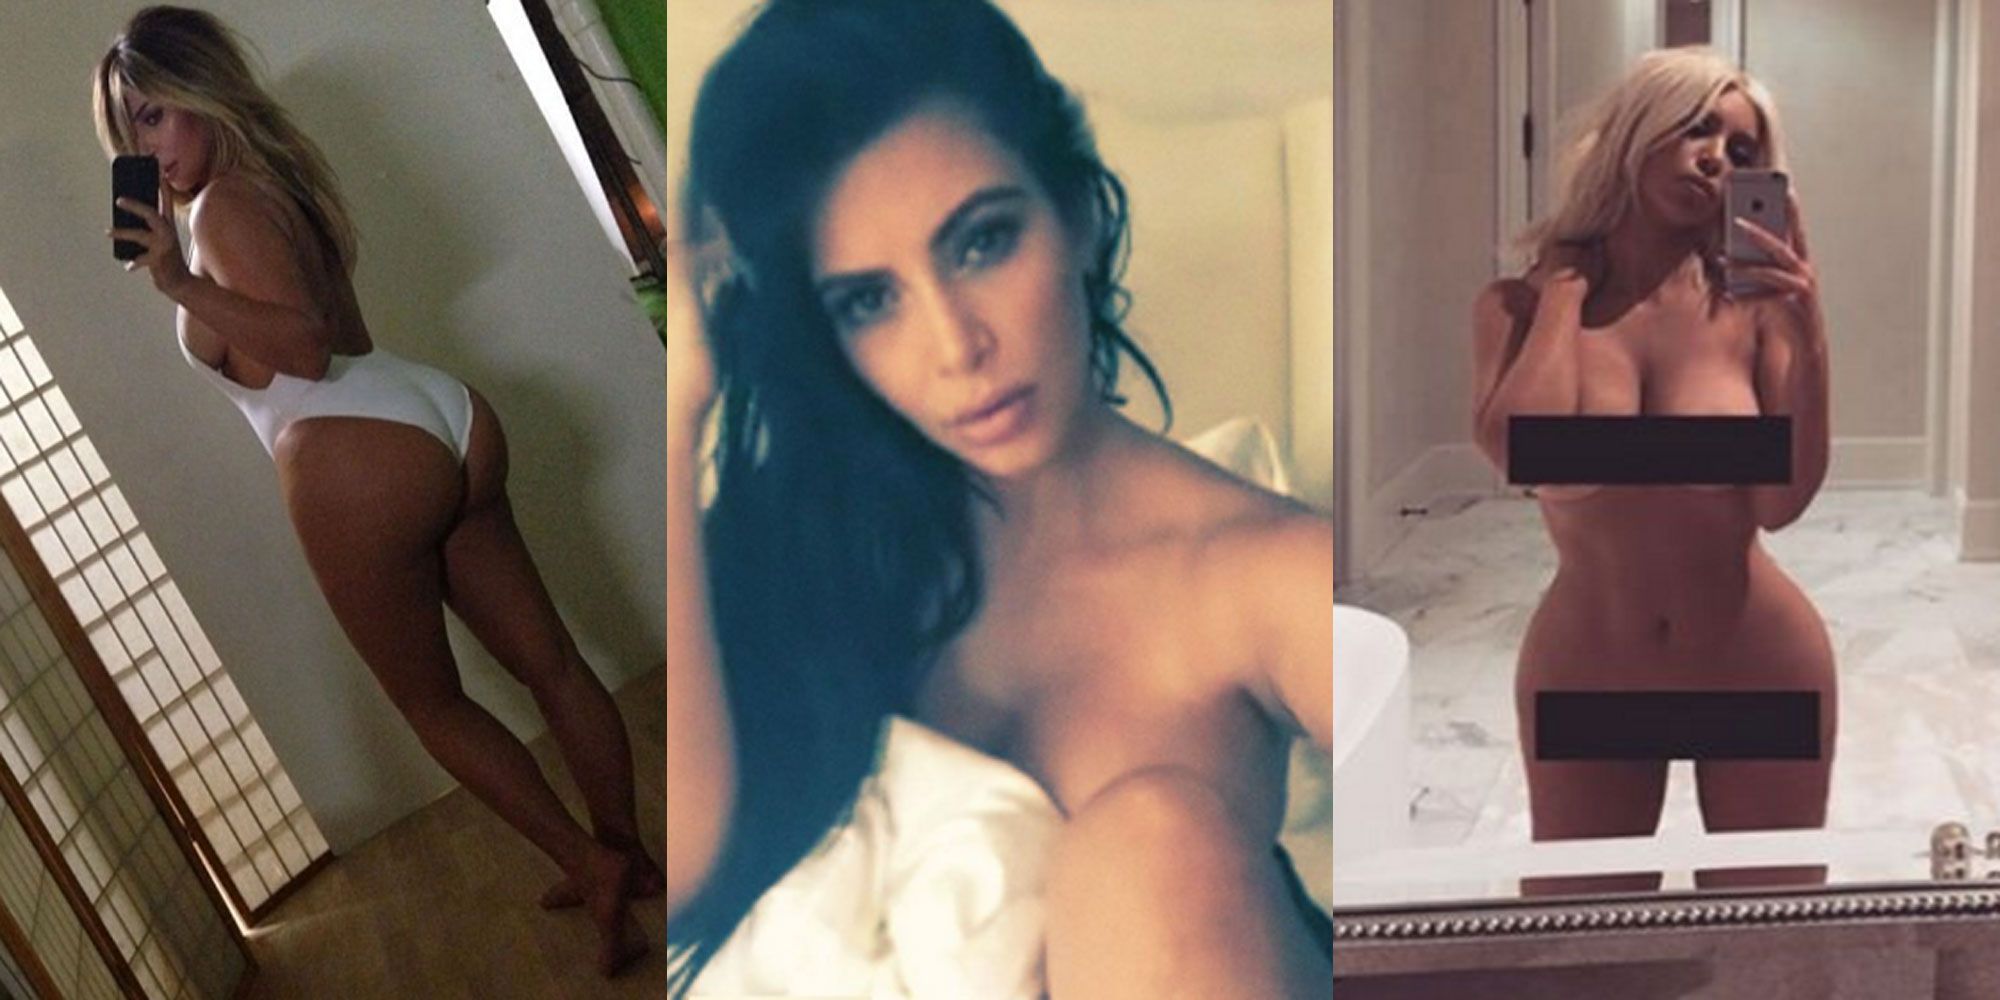 daniel sakai add photo khloe kardashian nude uncensored